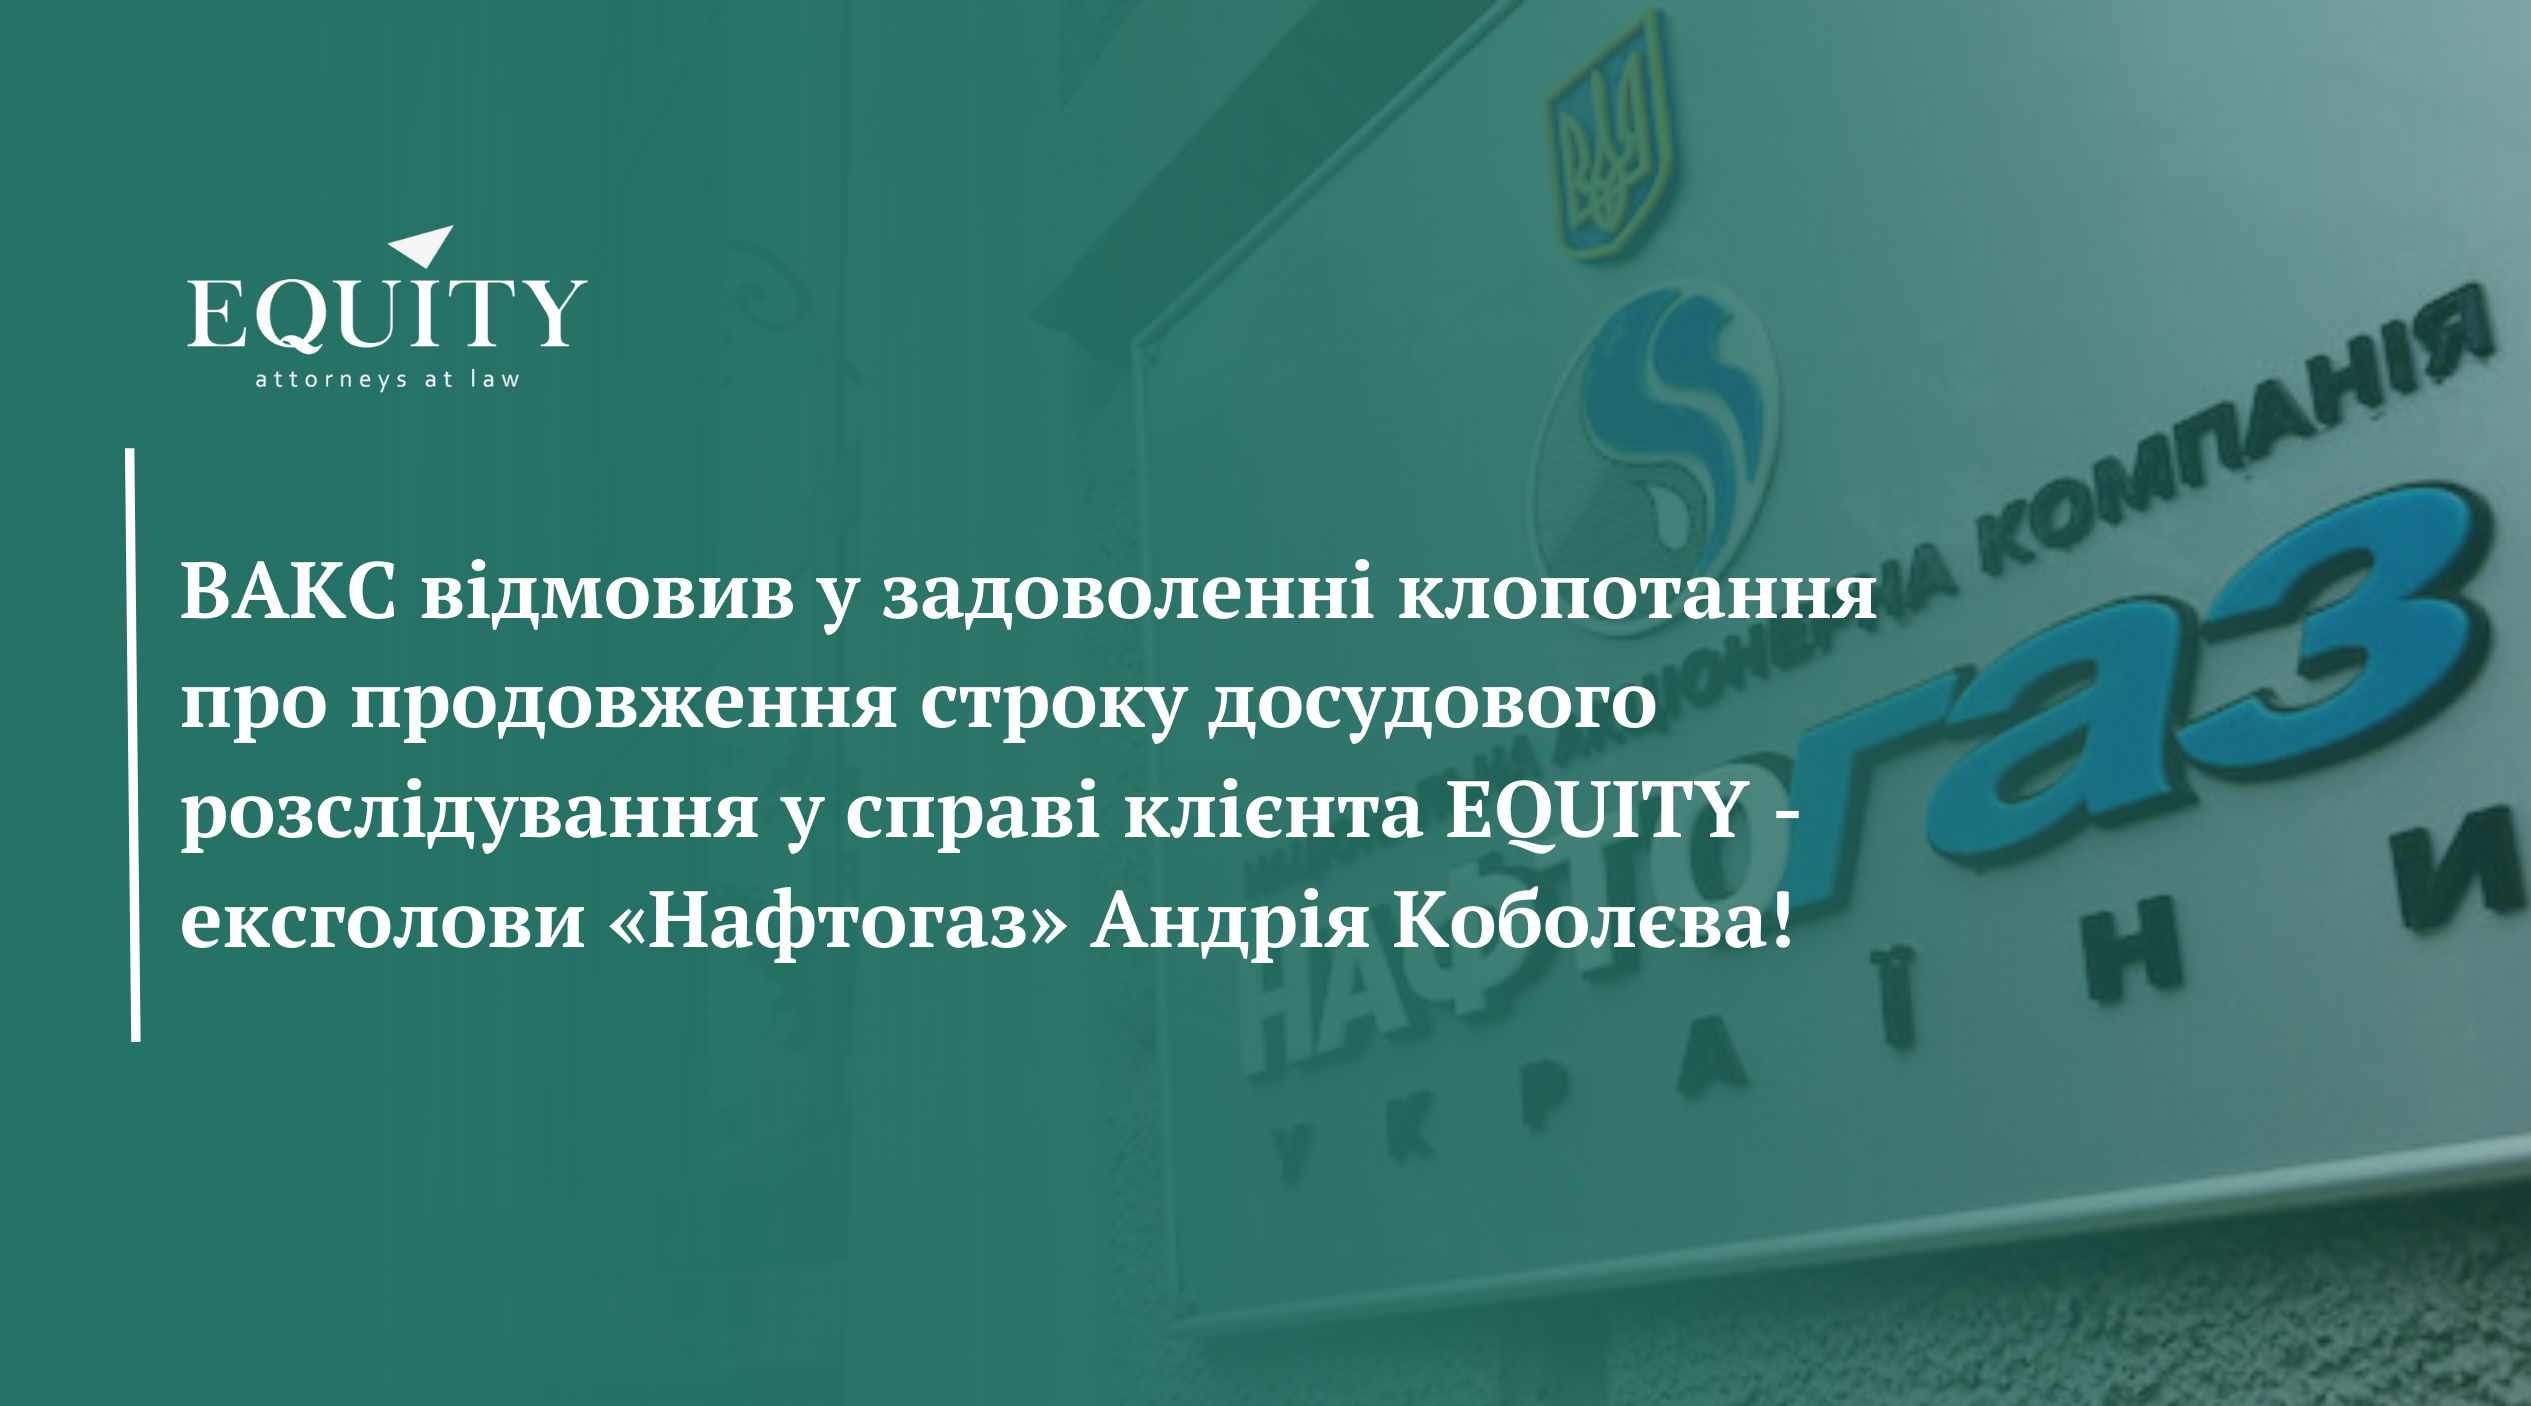 ВАКС підтримав позицію адвокатів EQUITY у справі ексголови «Нафтогаз» Андрія Коболєва!